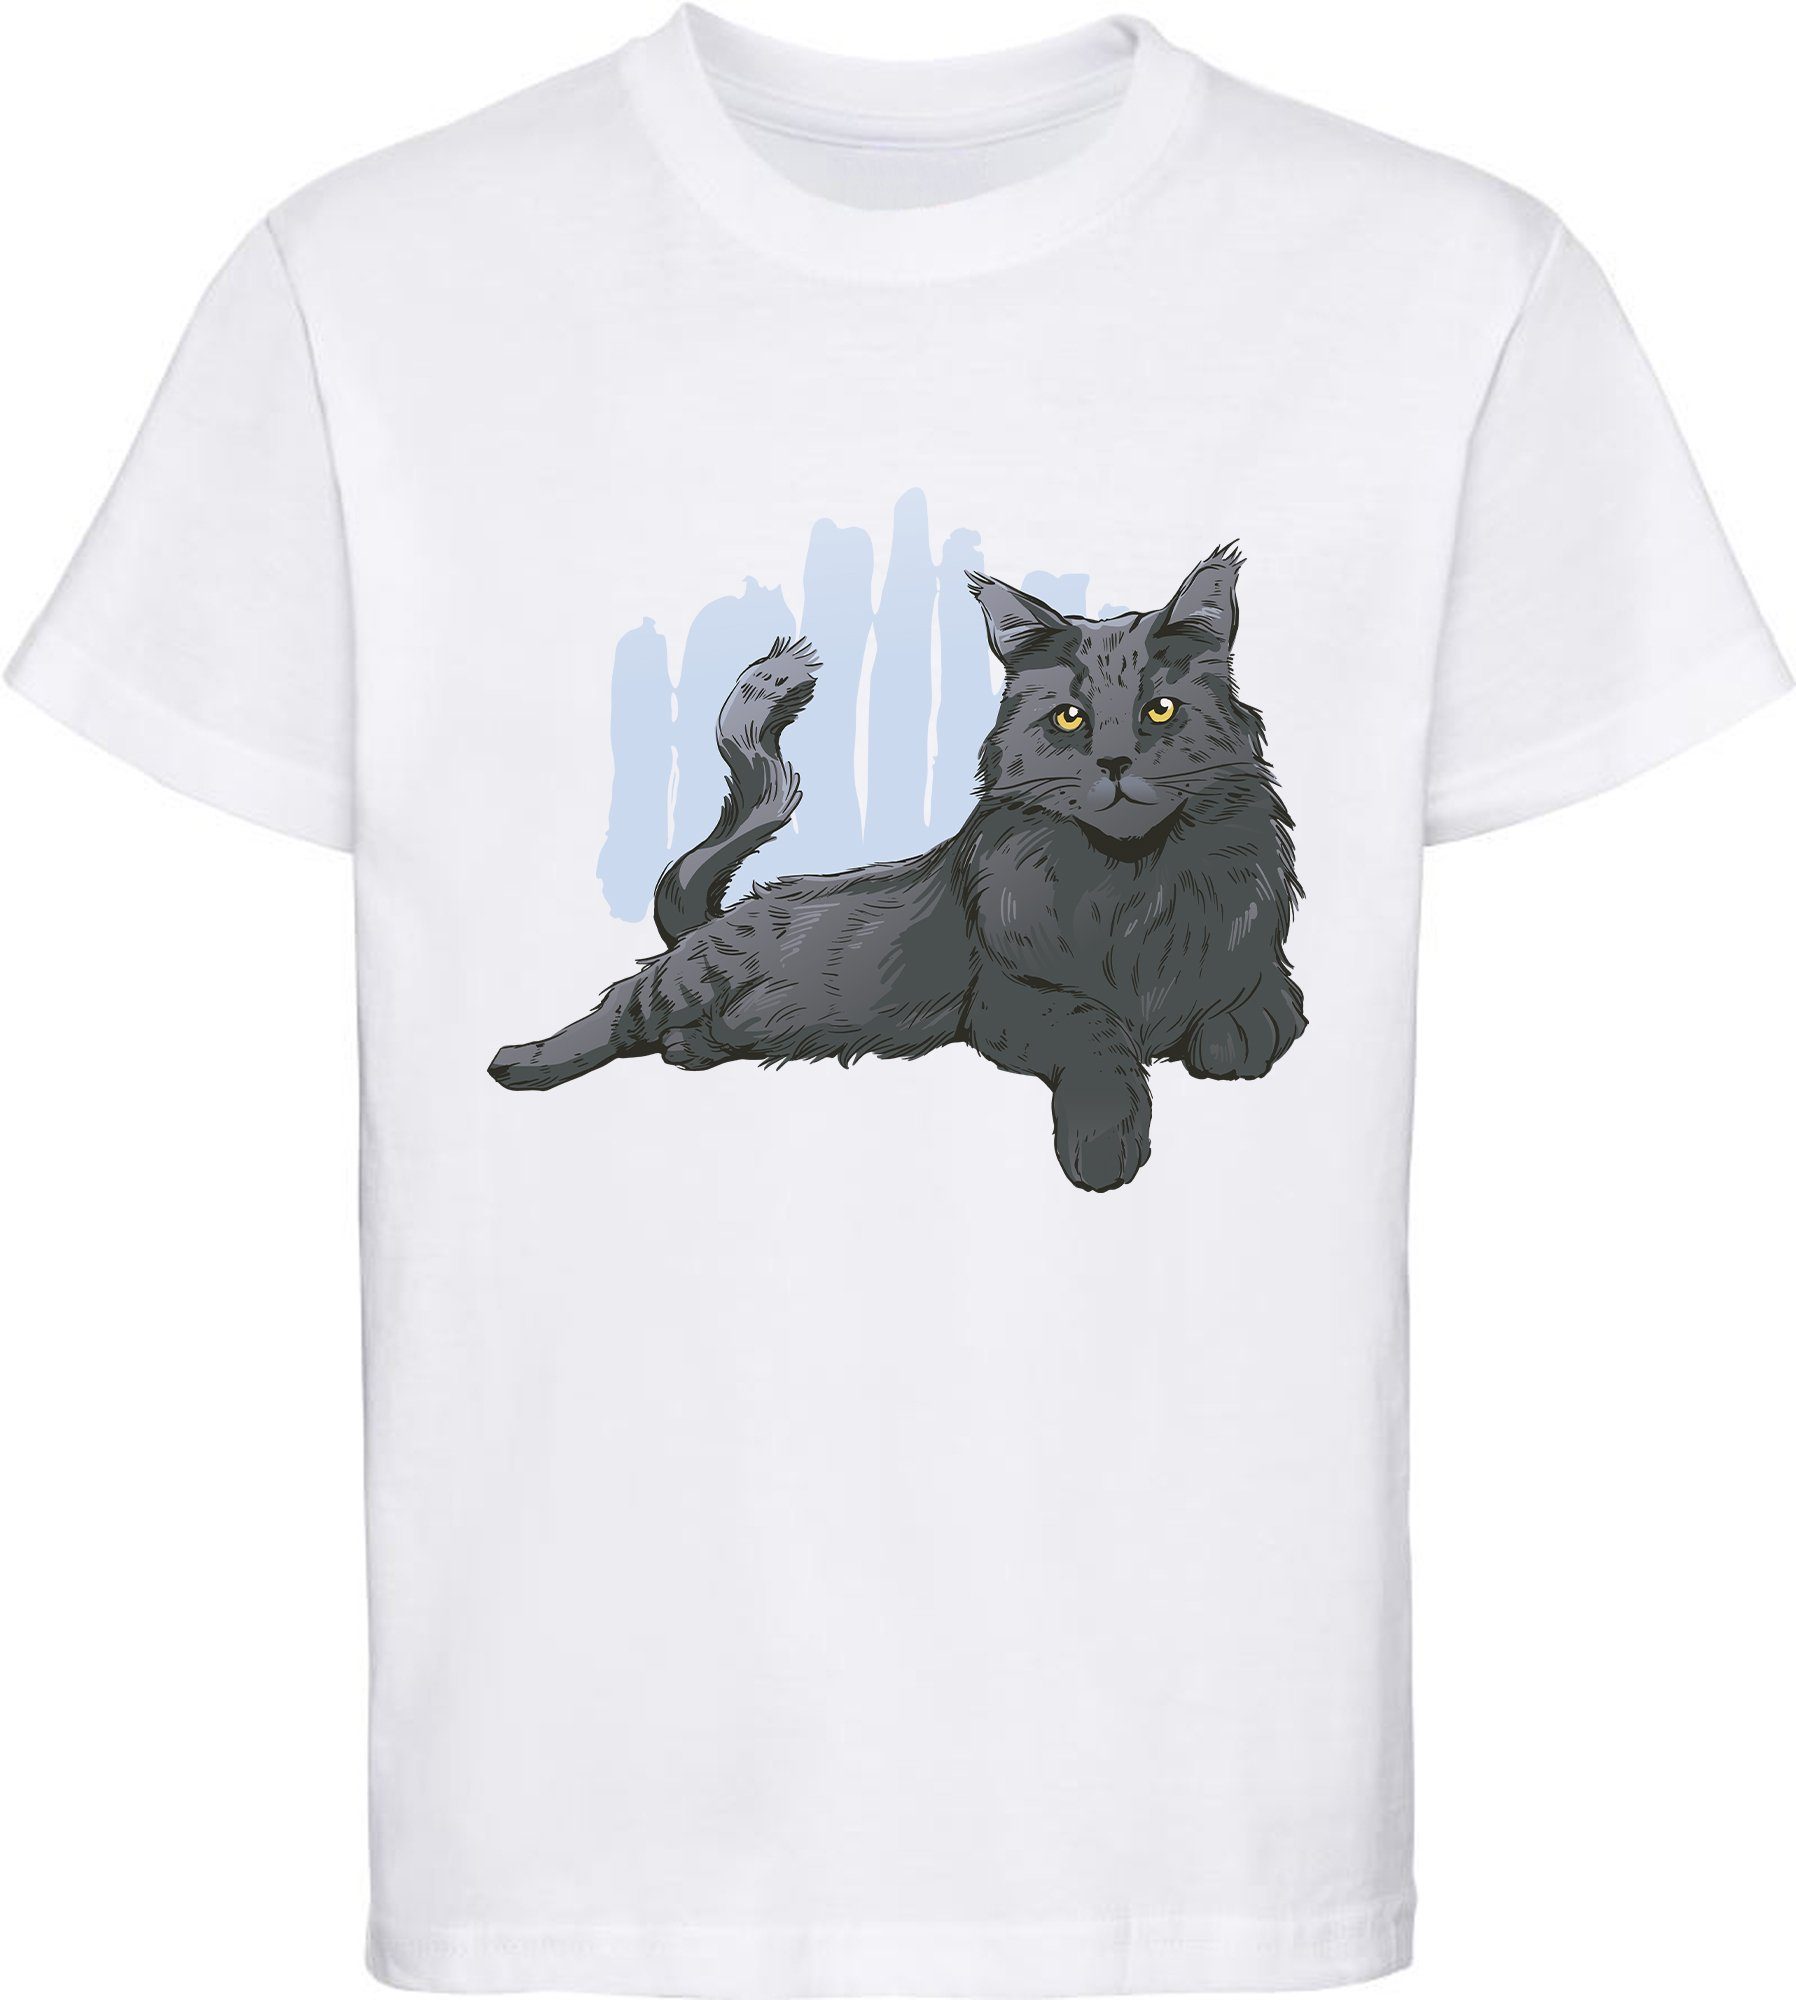 MyDesign24 Print-Shirt bedrucktes Mädchen T-Shirt mit liegender schwarzer Katze 100% Baumwolle mit Katzen Aufdruck, weiß, schwarz, rot, rosa, i108 weiss